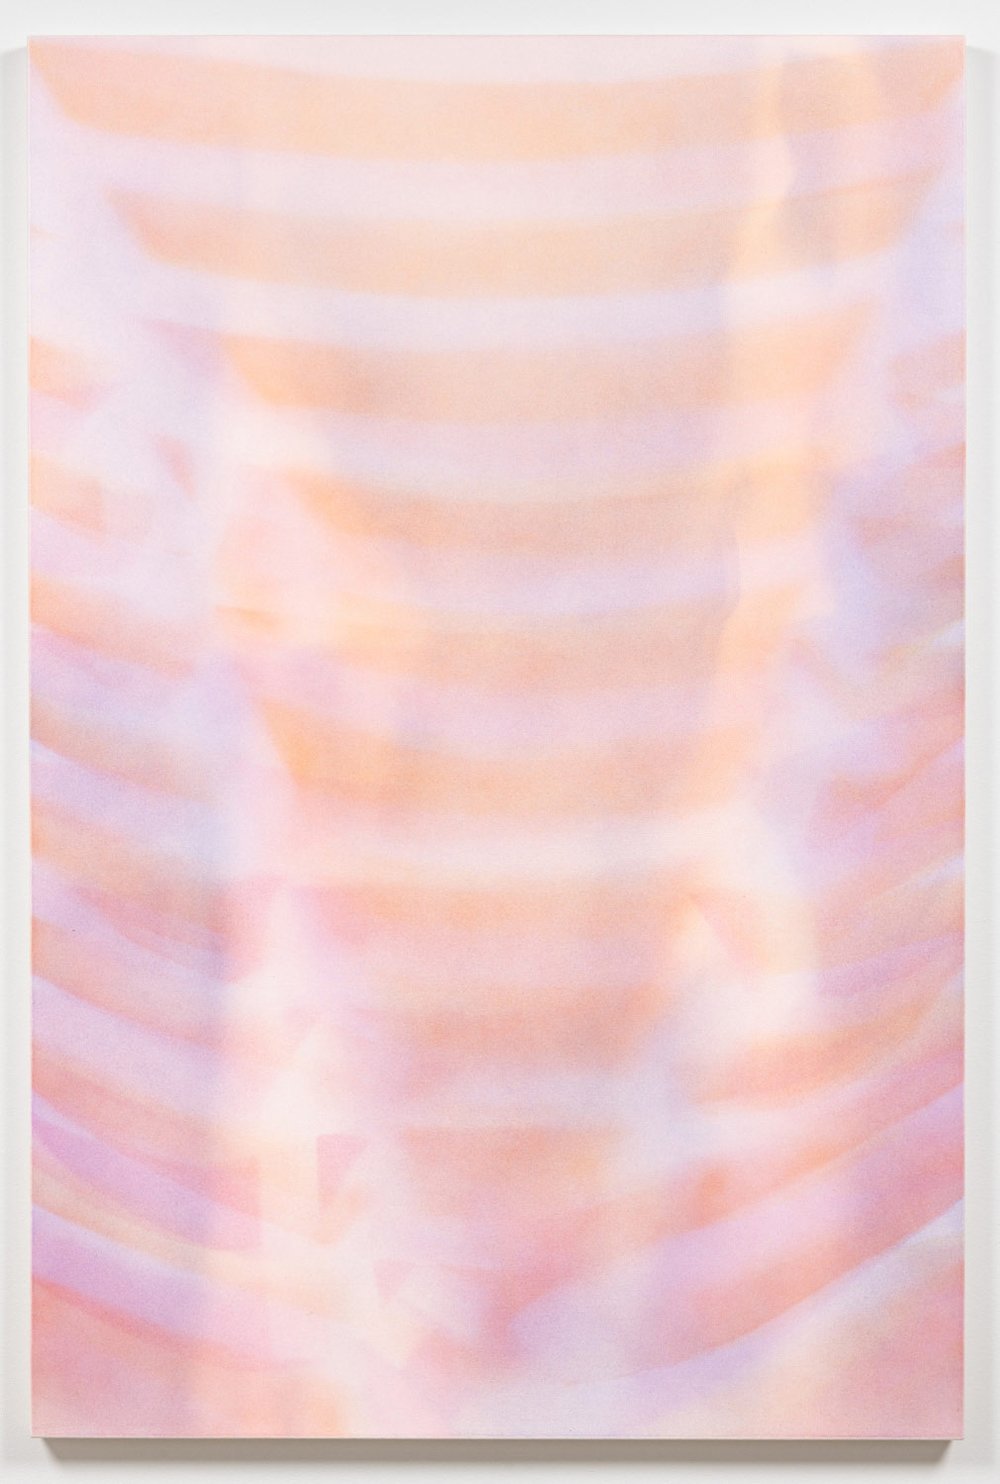   Marie-Claire Blais,   Image mouvement, étude 2 , 2016  , Acrylique sur toile / Acrylic on canvas, 72 x 48 in. 